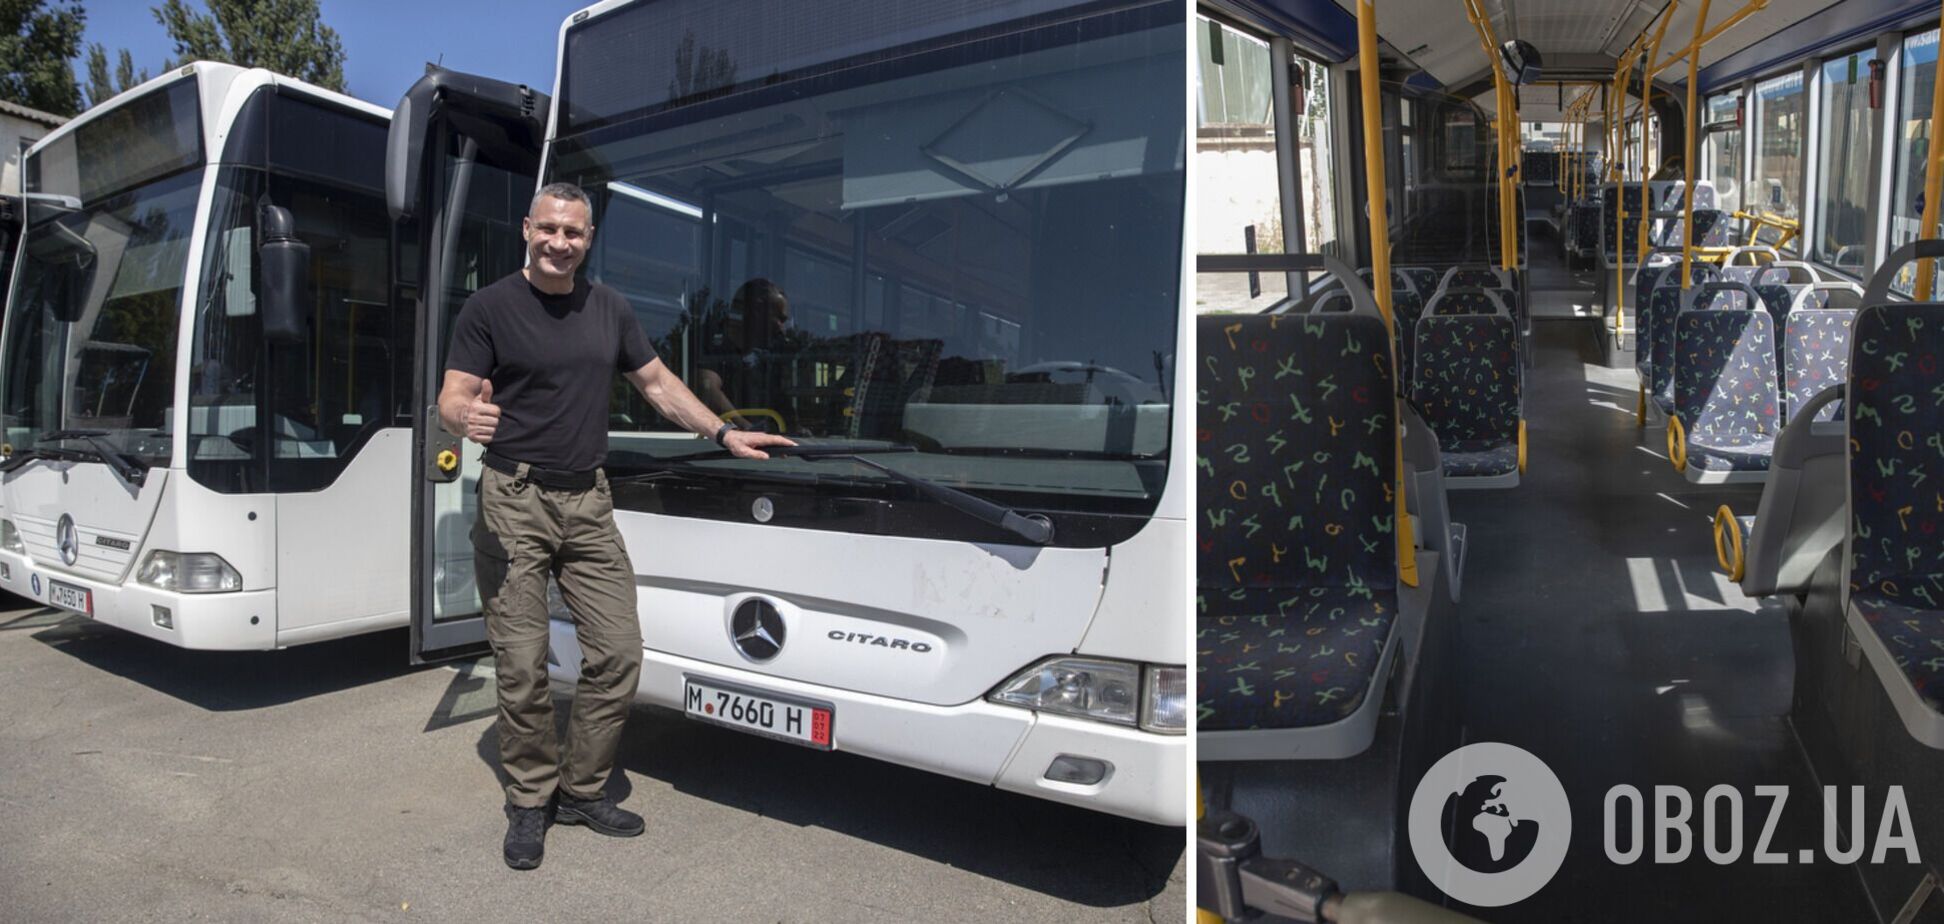 Кличко передал 'Киевпасстрансу' 19 автобусов, полученных от немецких партнеров: уже скоро выйдут на маршруты. Фото